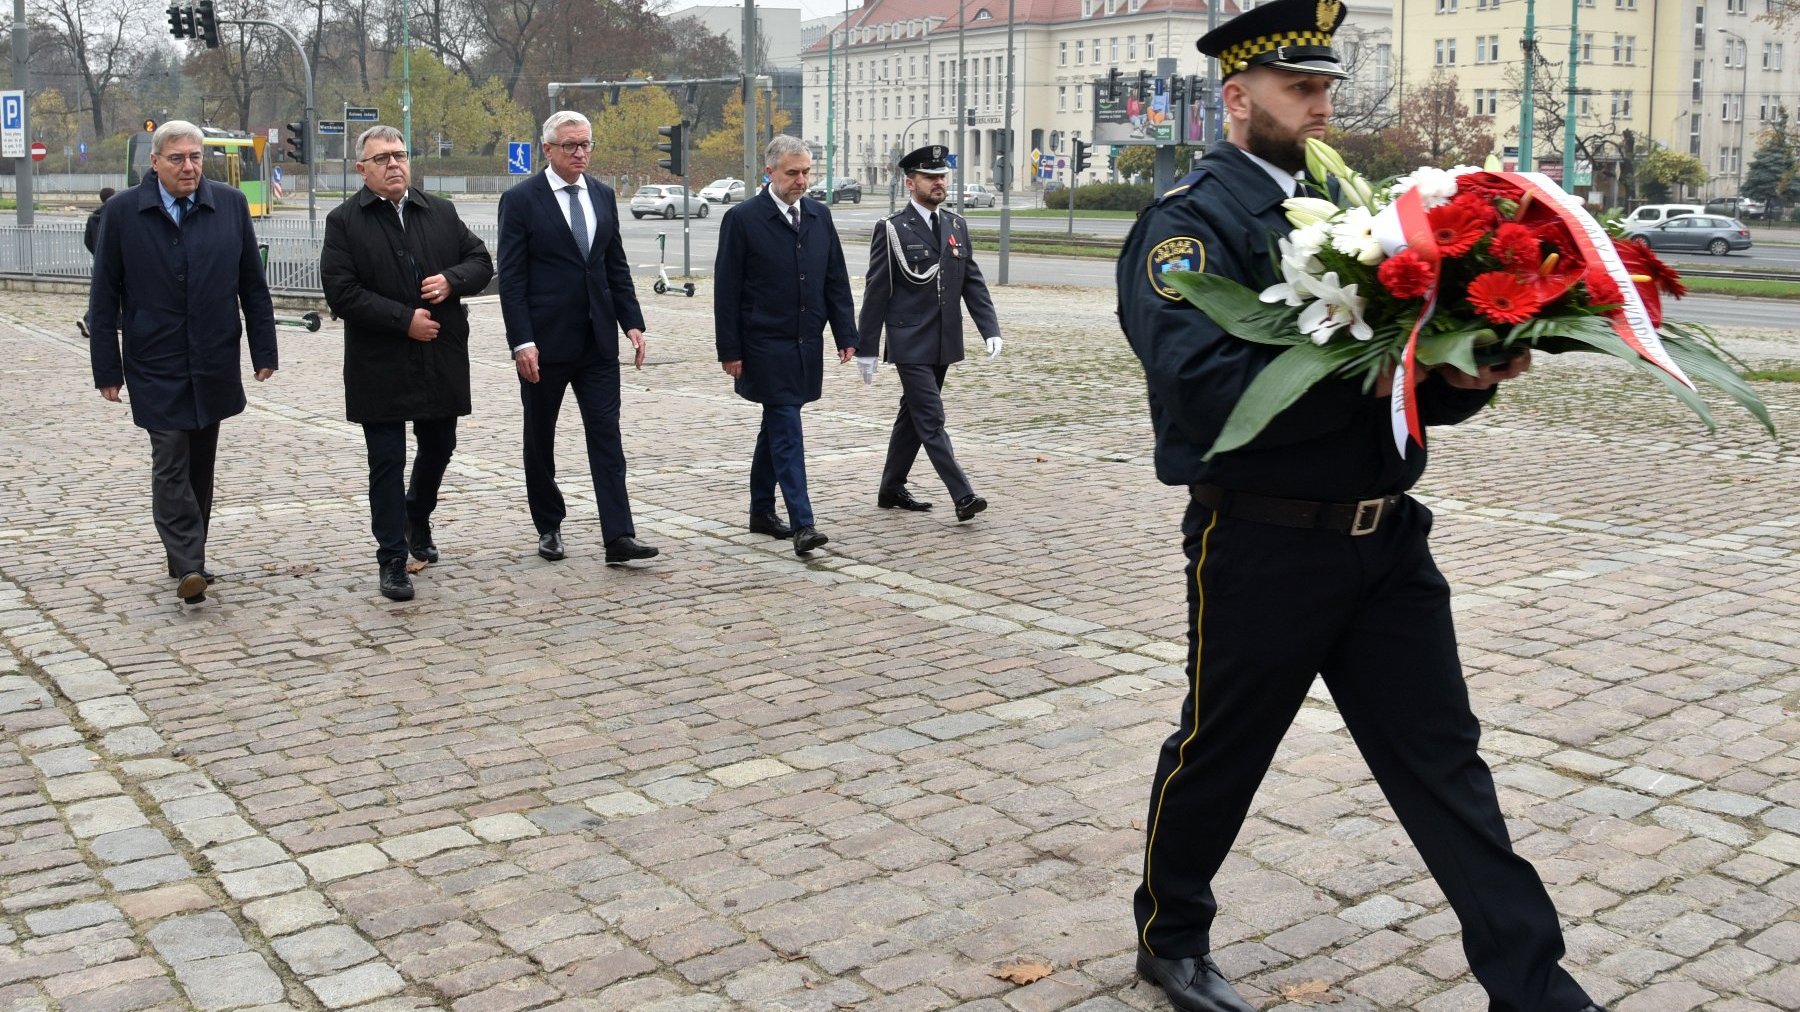 Galeria zdjęć ze składania kwiatów w dniu Wszystkich Świętych na grobach zasłużonych przez przedstawicieli poznańskiego samorządu